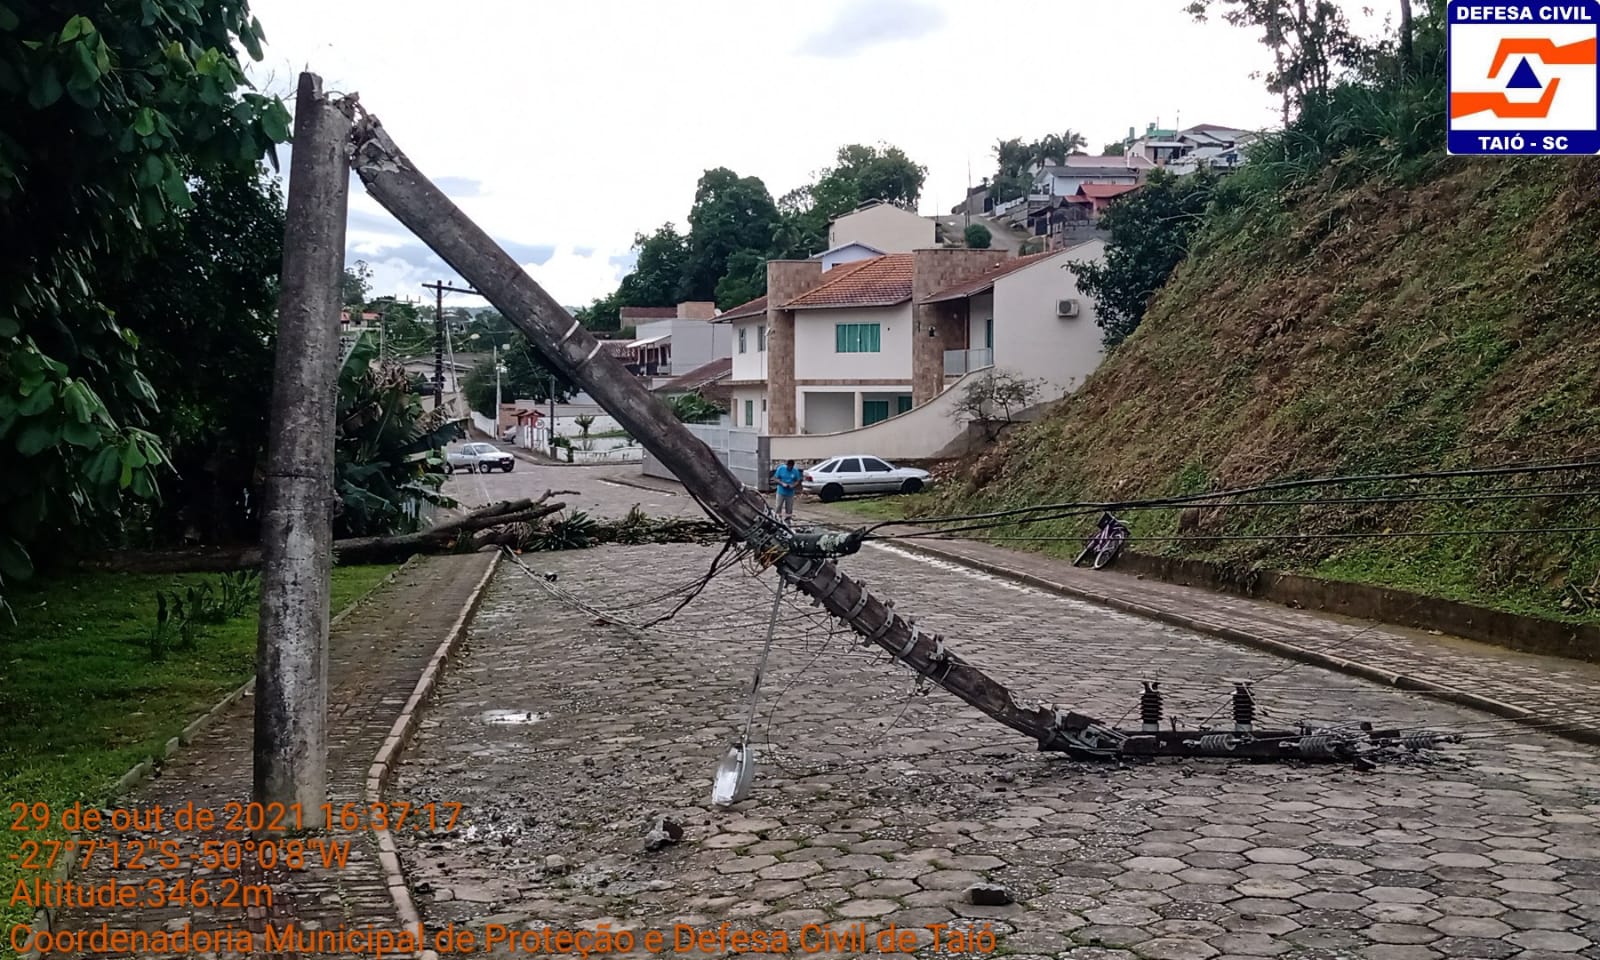 Ventania derruba árvores e poste em Taió